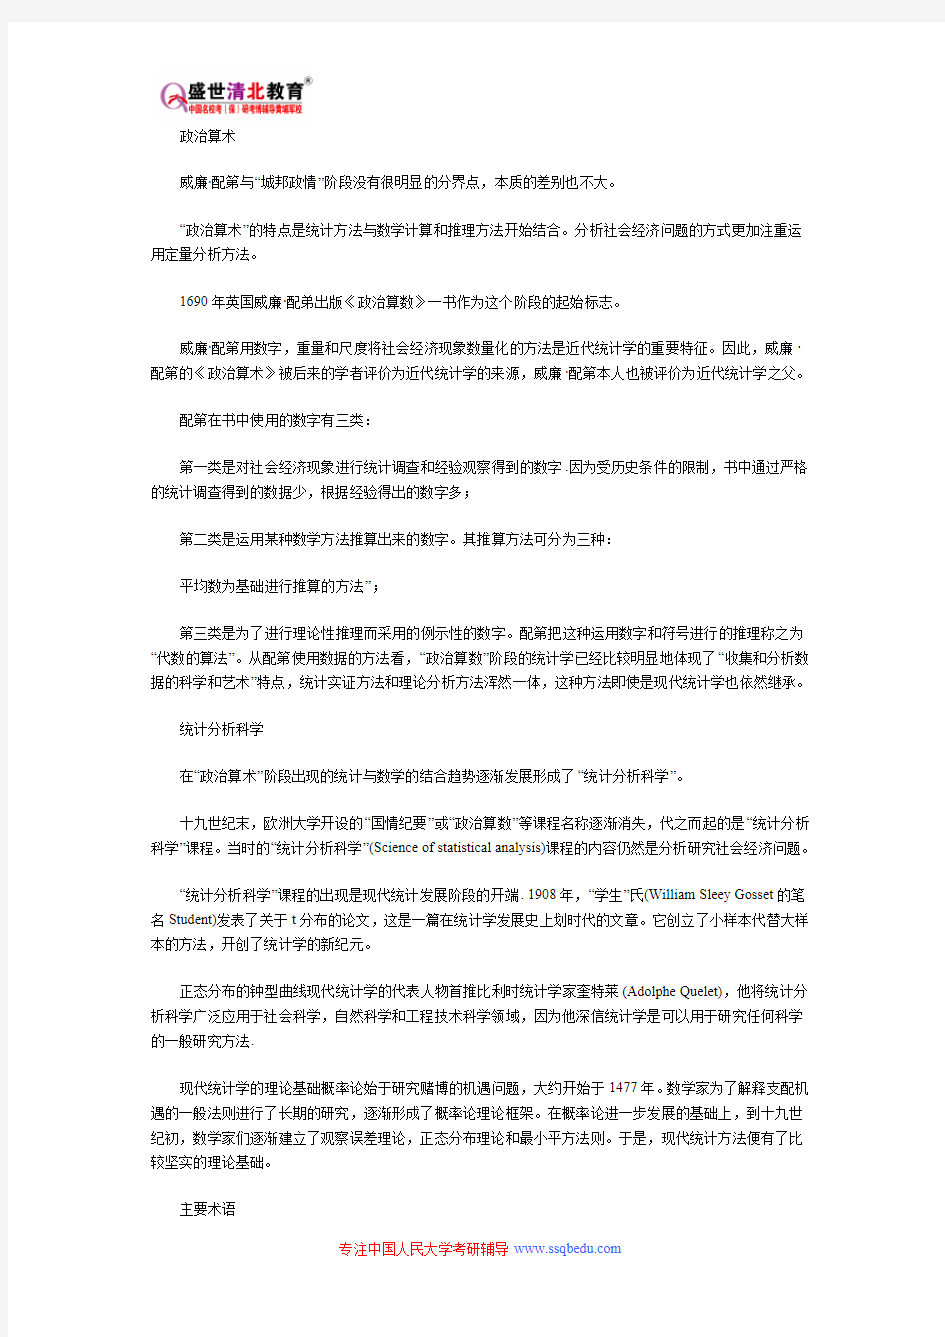 中国人民大学805-统计学 考研参考书目、考研真题、复试分数线